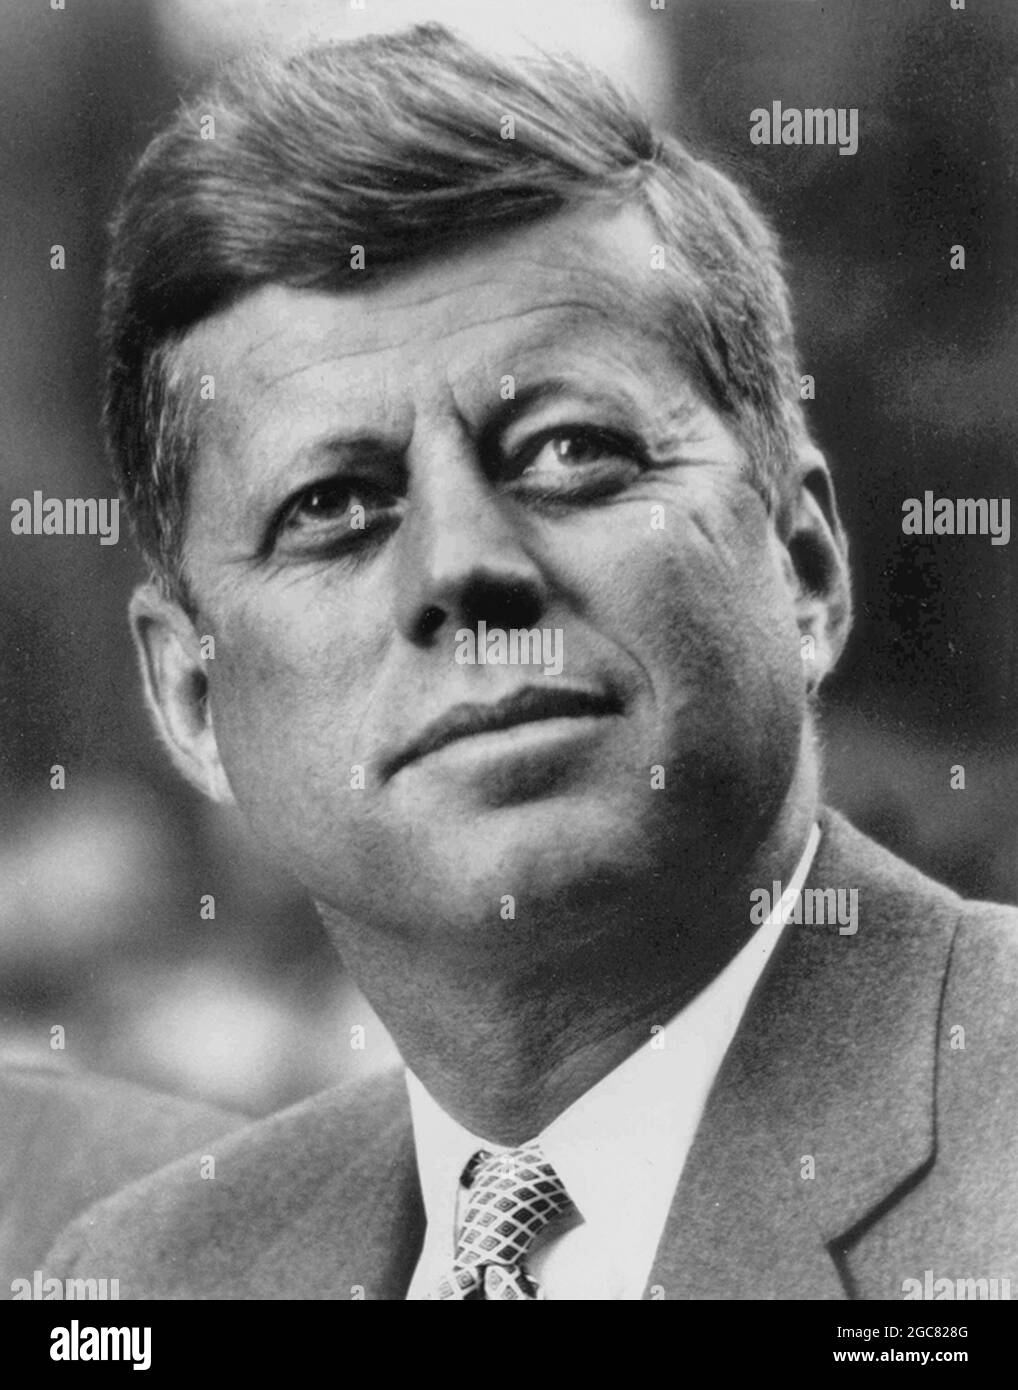 USA - um 1962 - EIN Porträt des US-Präsidenten John Fitzgerald Kennedy (1961-1963) - Foto: Geopix Stockfoto